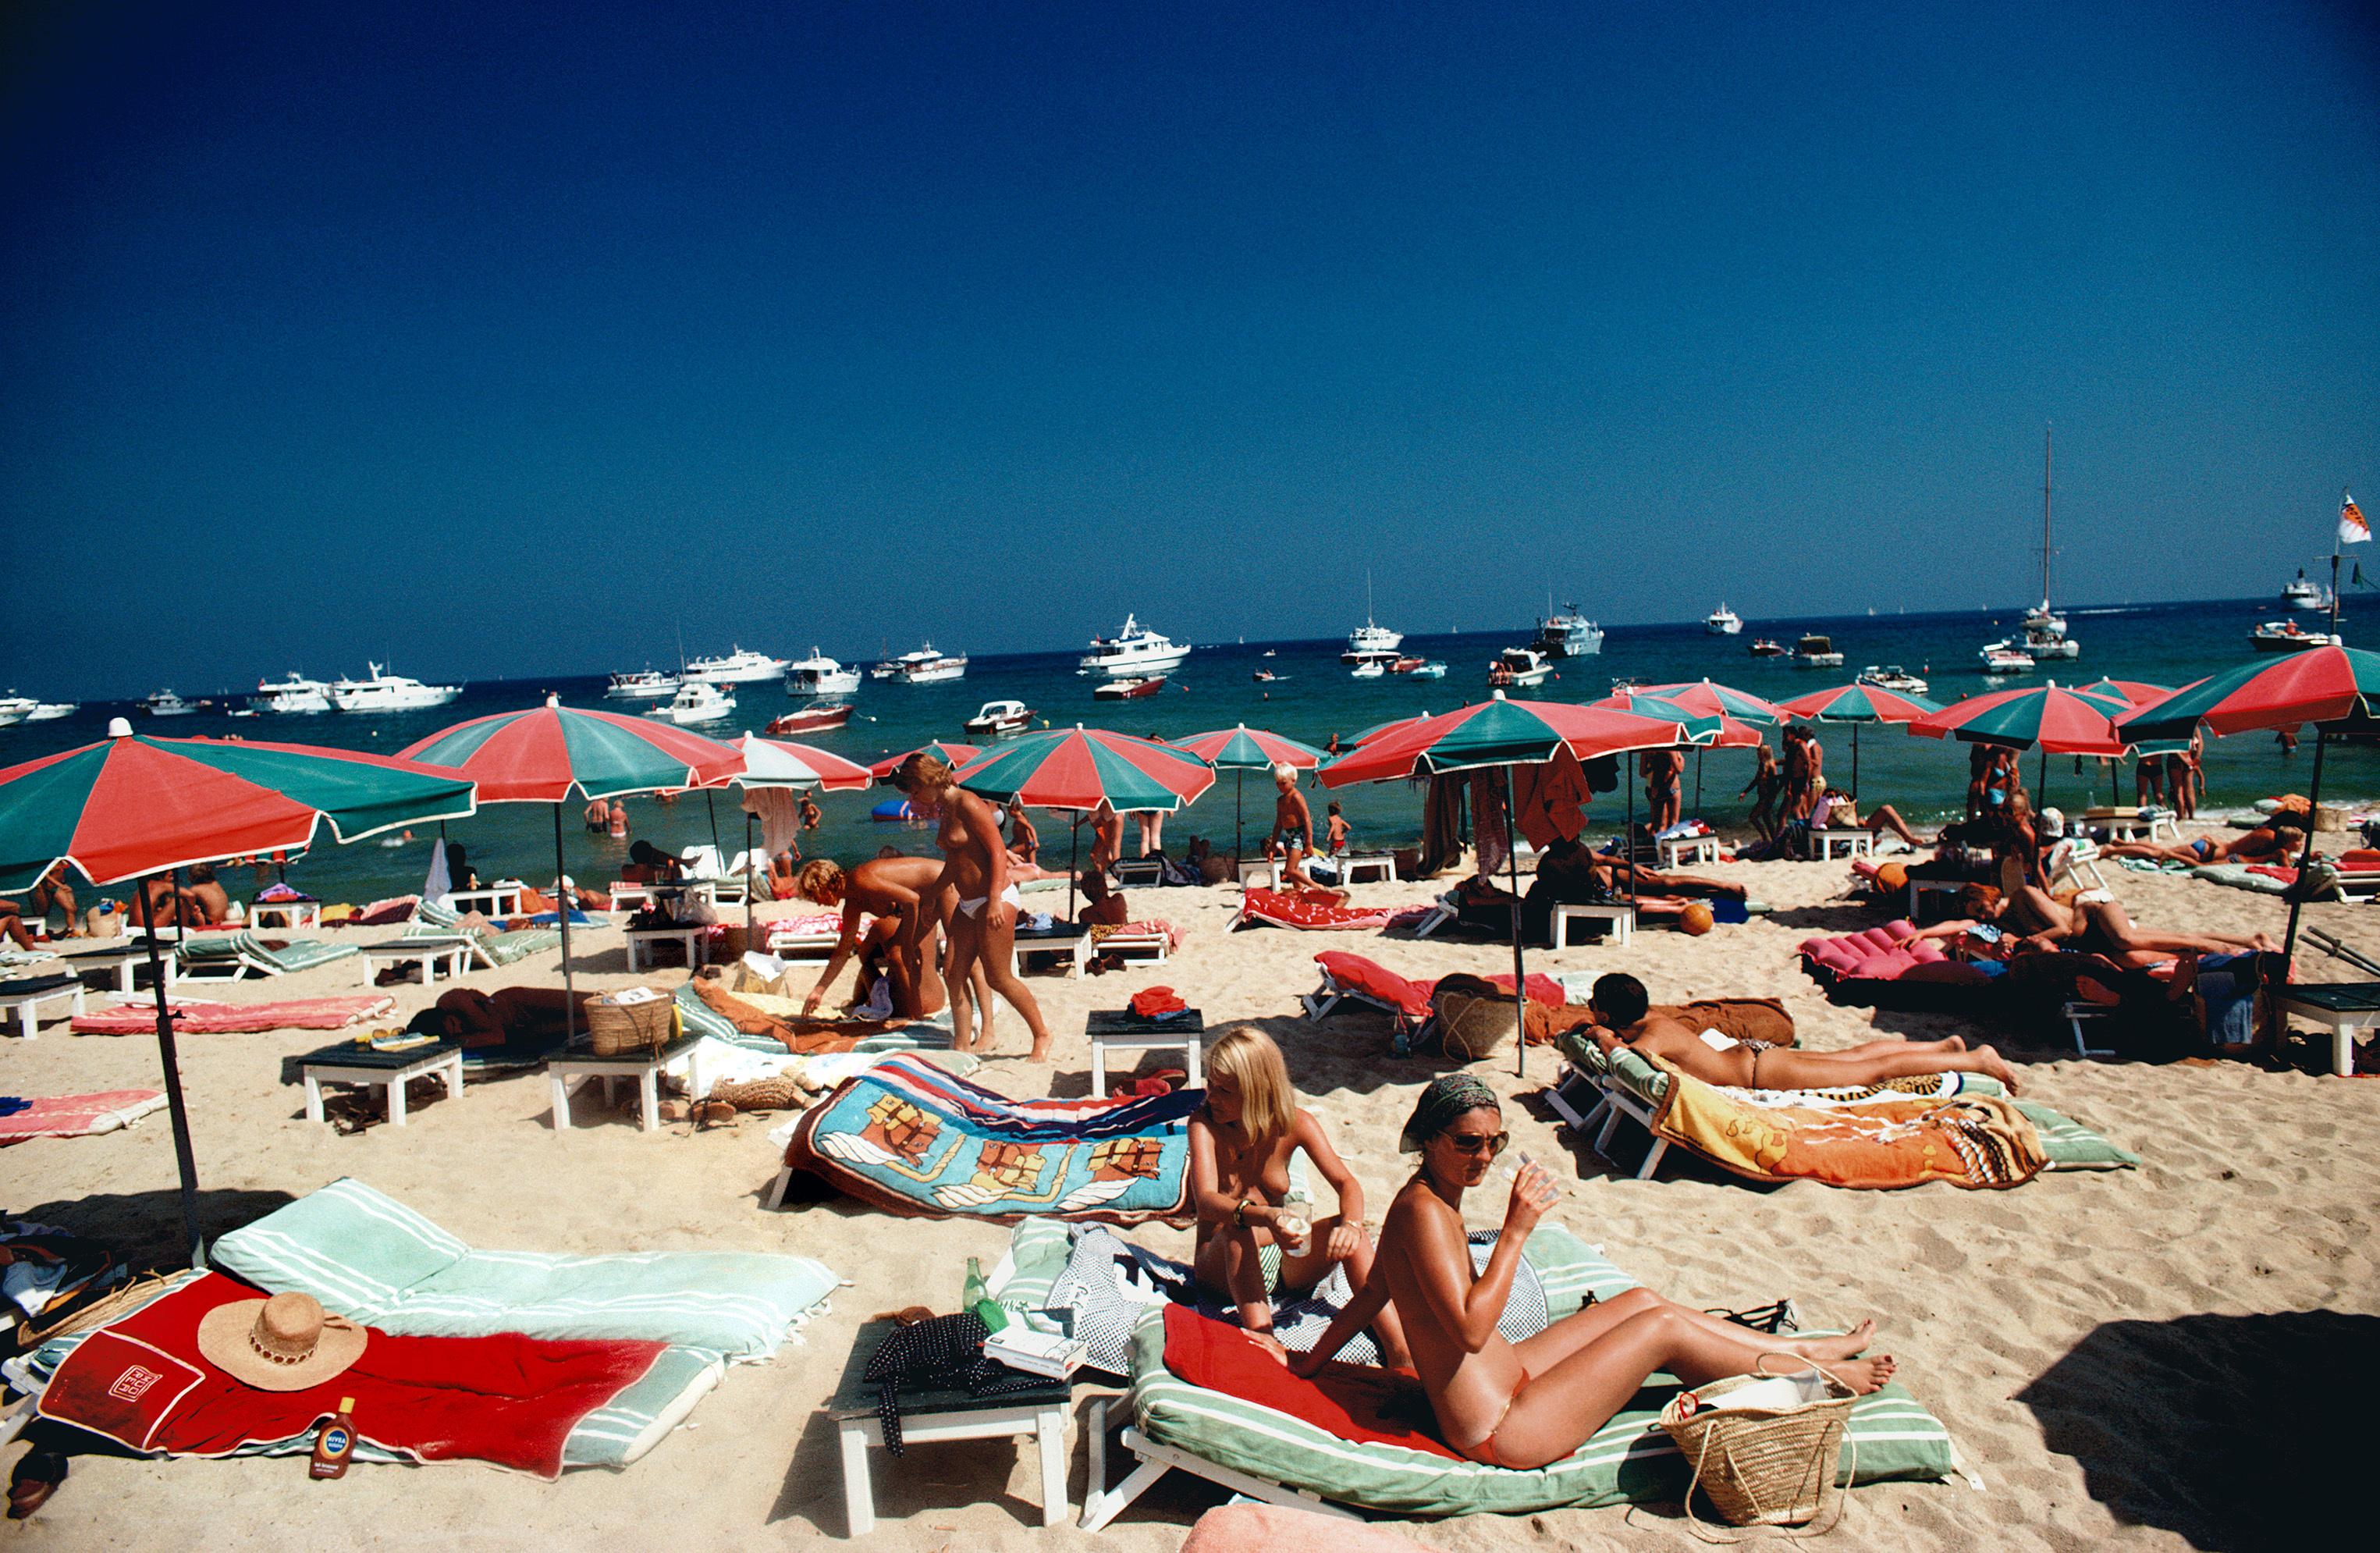 Strand von Saint Tropez

1977

Sonnenanbeter am Strand von St. Tropez, Frankreich, 1977.

Von Slim Aarons

30x20" / 76x51 cm - Papierformat 
C-Typ Druck
ungerahmt 
Nachlassgestempelte Ausgabe 
Auflage von insgesamt 150 Stück 
Mit Tinte nummeriert